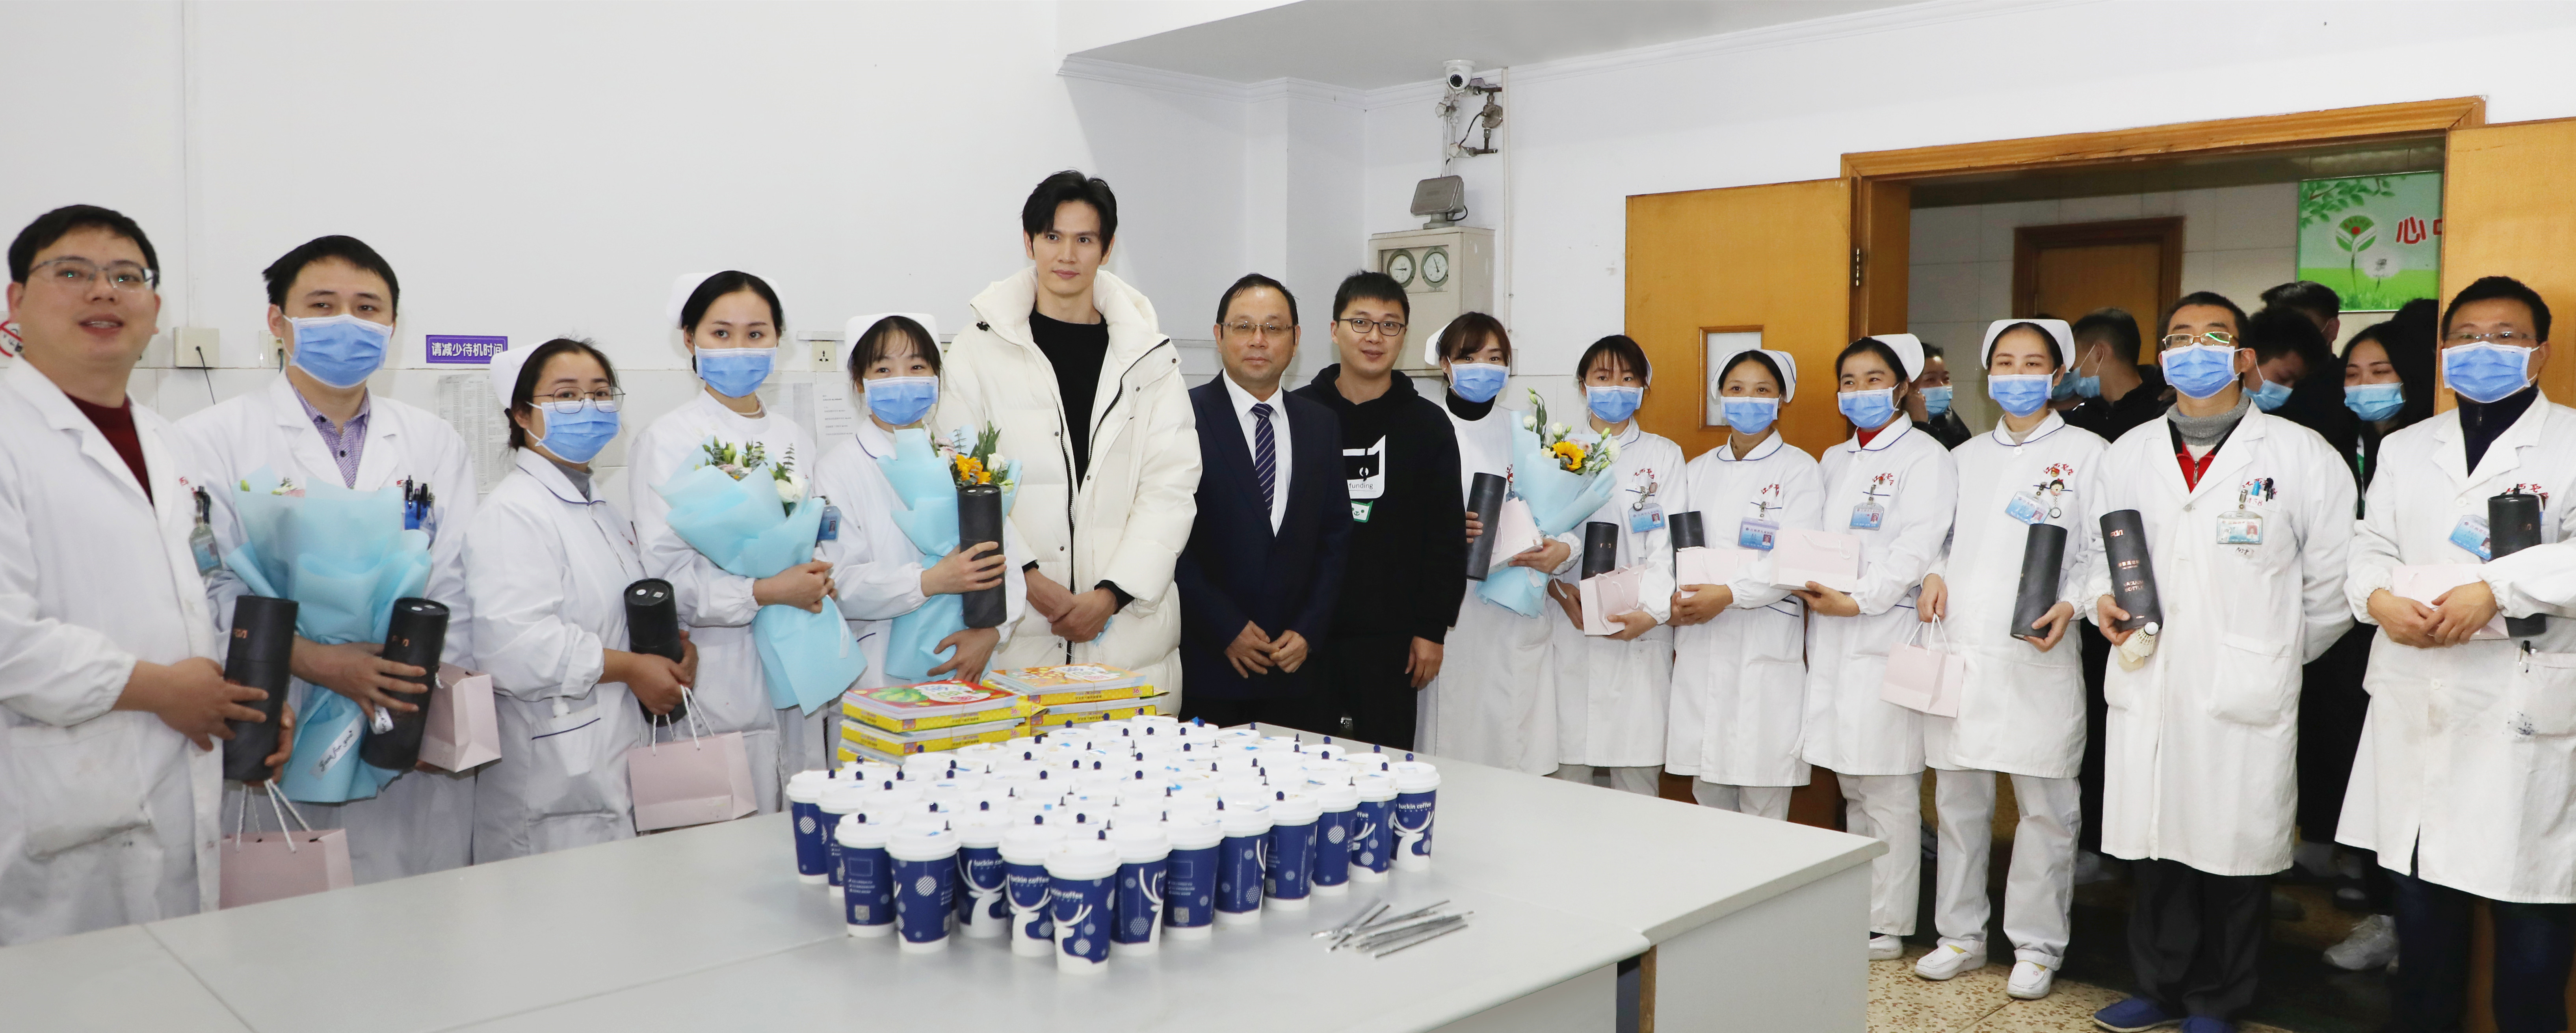 江西省儿童医院举办「因你而在，为爱而生——微爱 1+1」公益活动